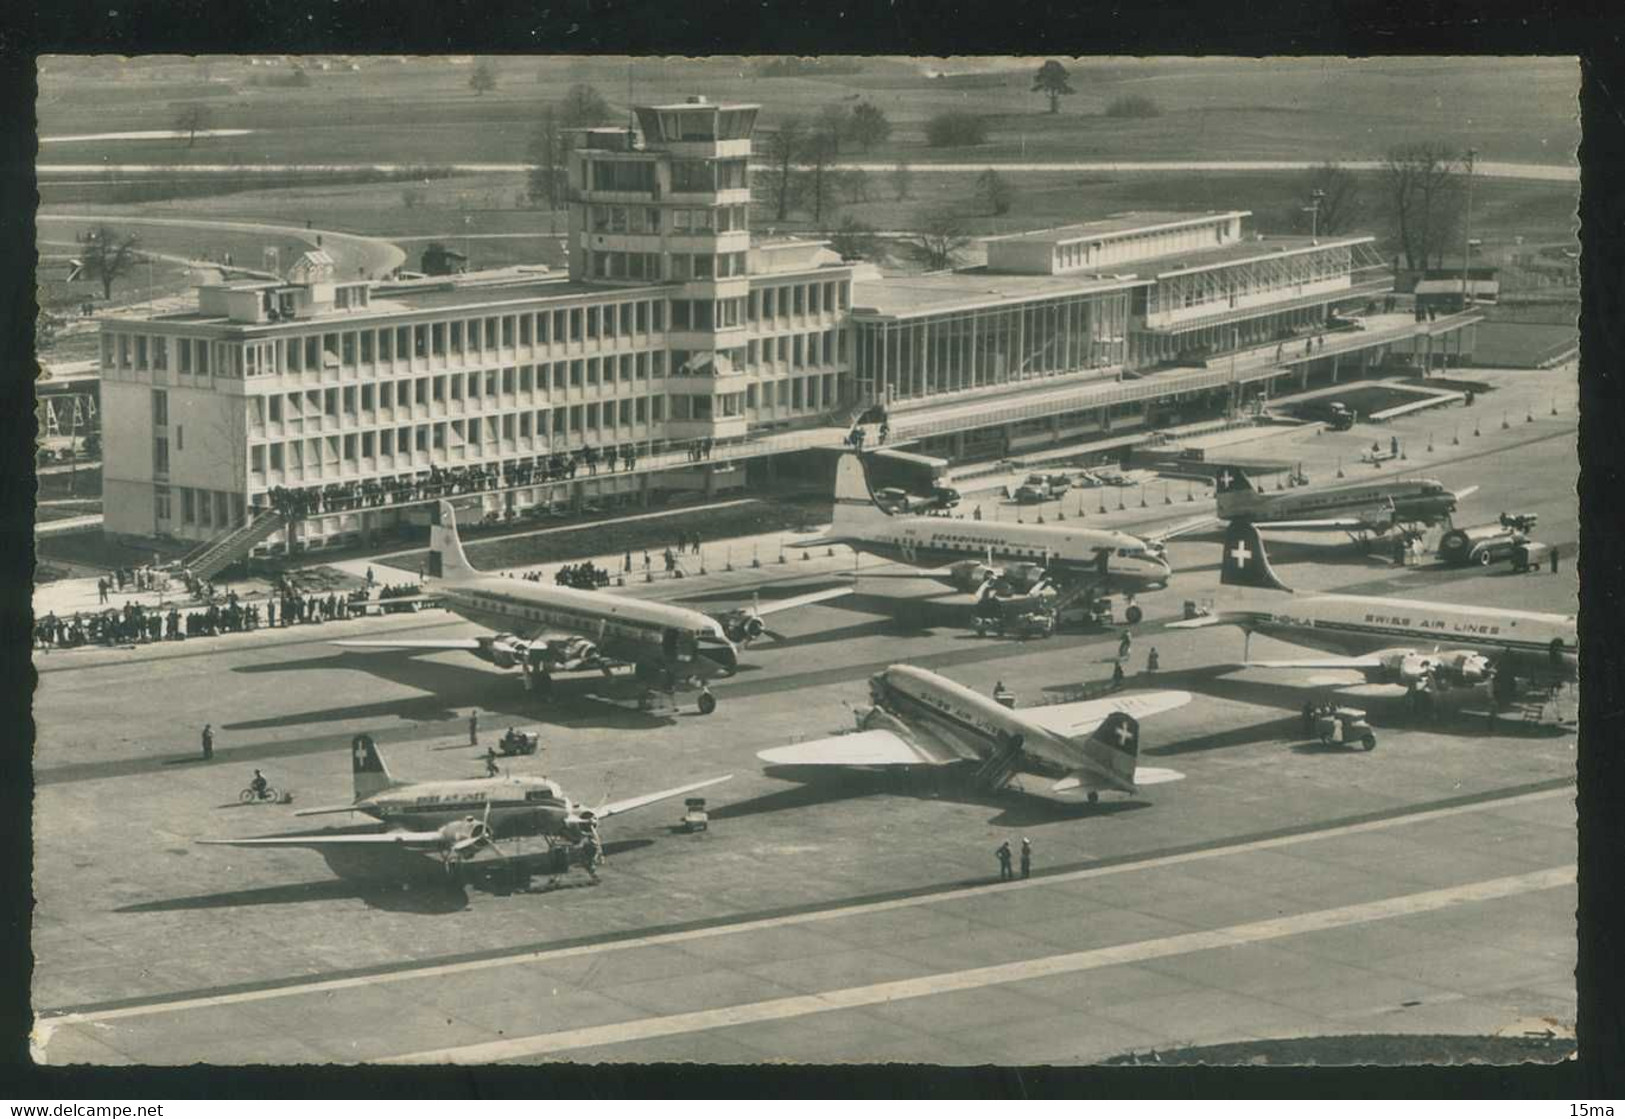 Zurich Flughafen Kloten 1953 Farben Photo - Kloten